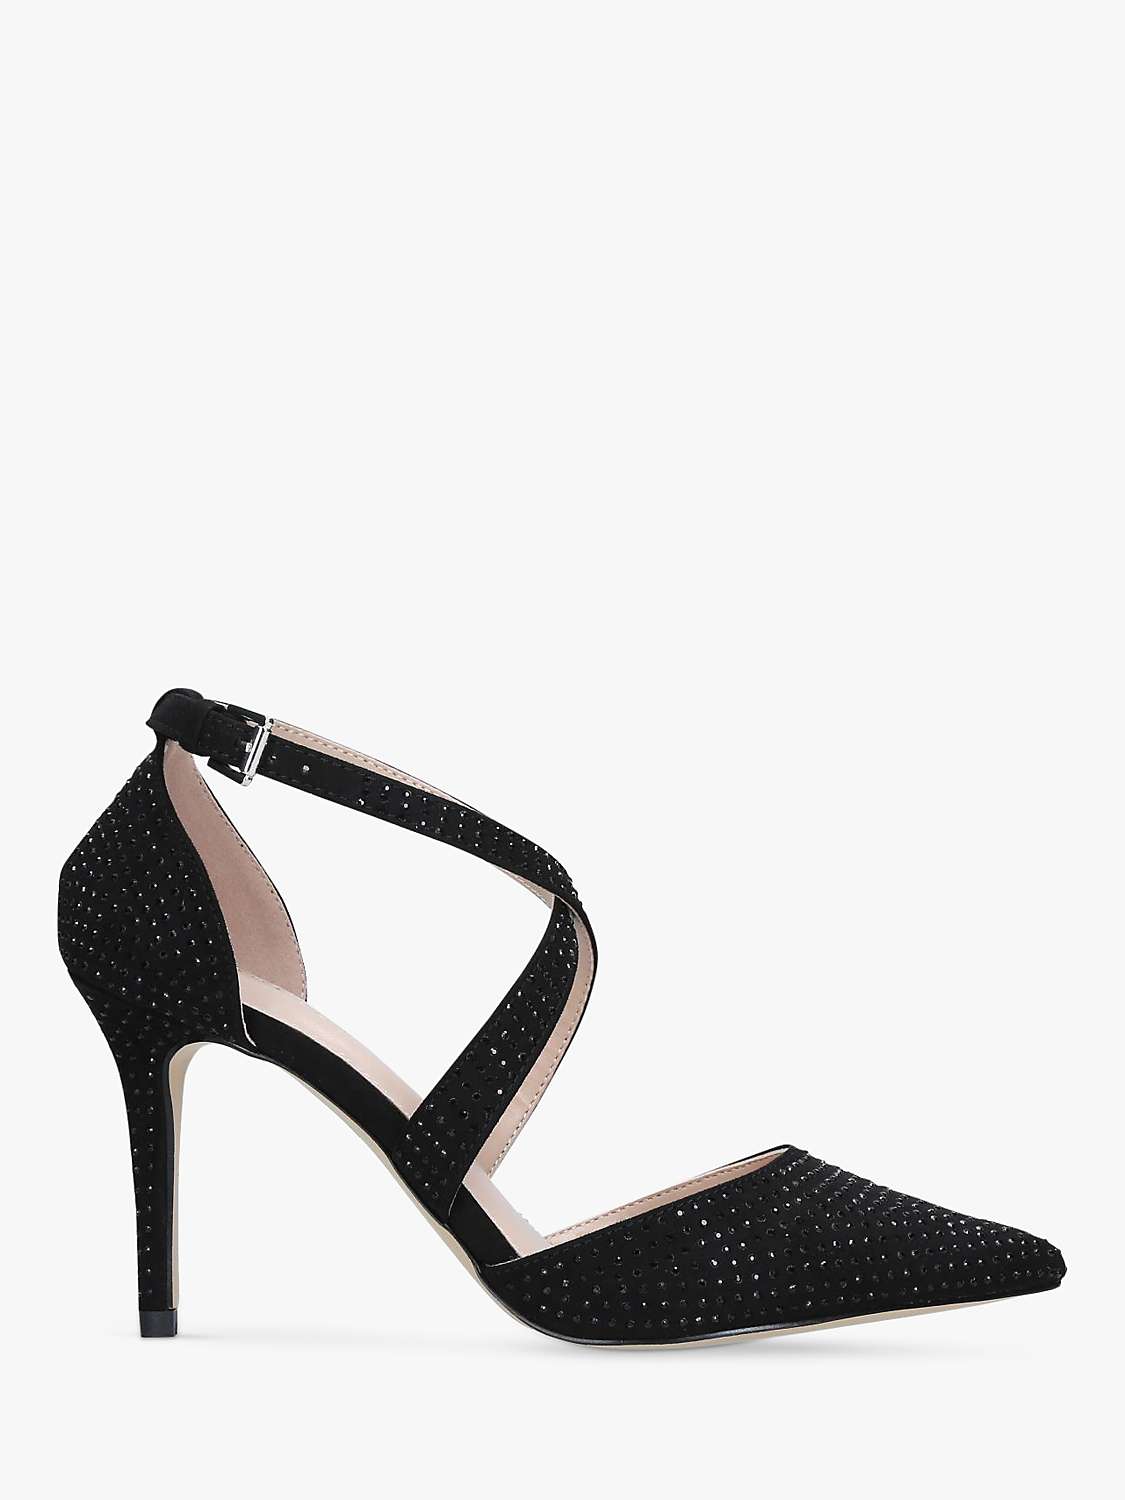 Buy Carvela Kross Jewel Suede Court Shoes, Black Online at johnlewis.com